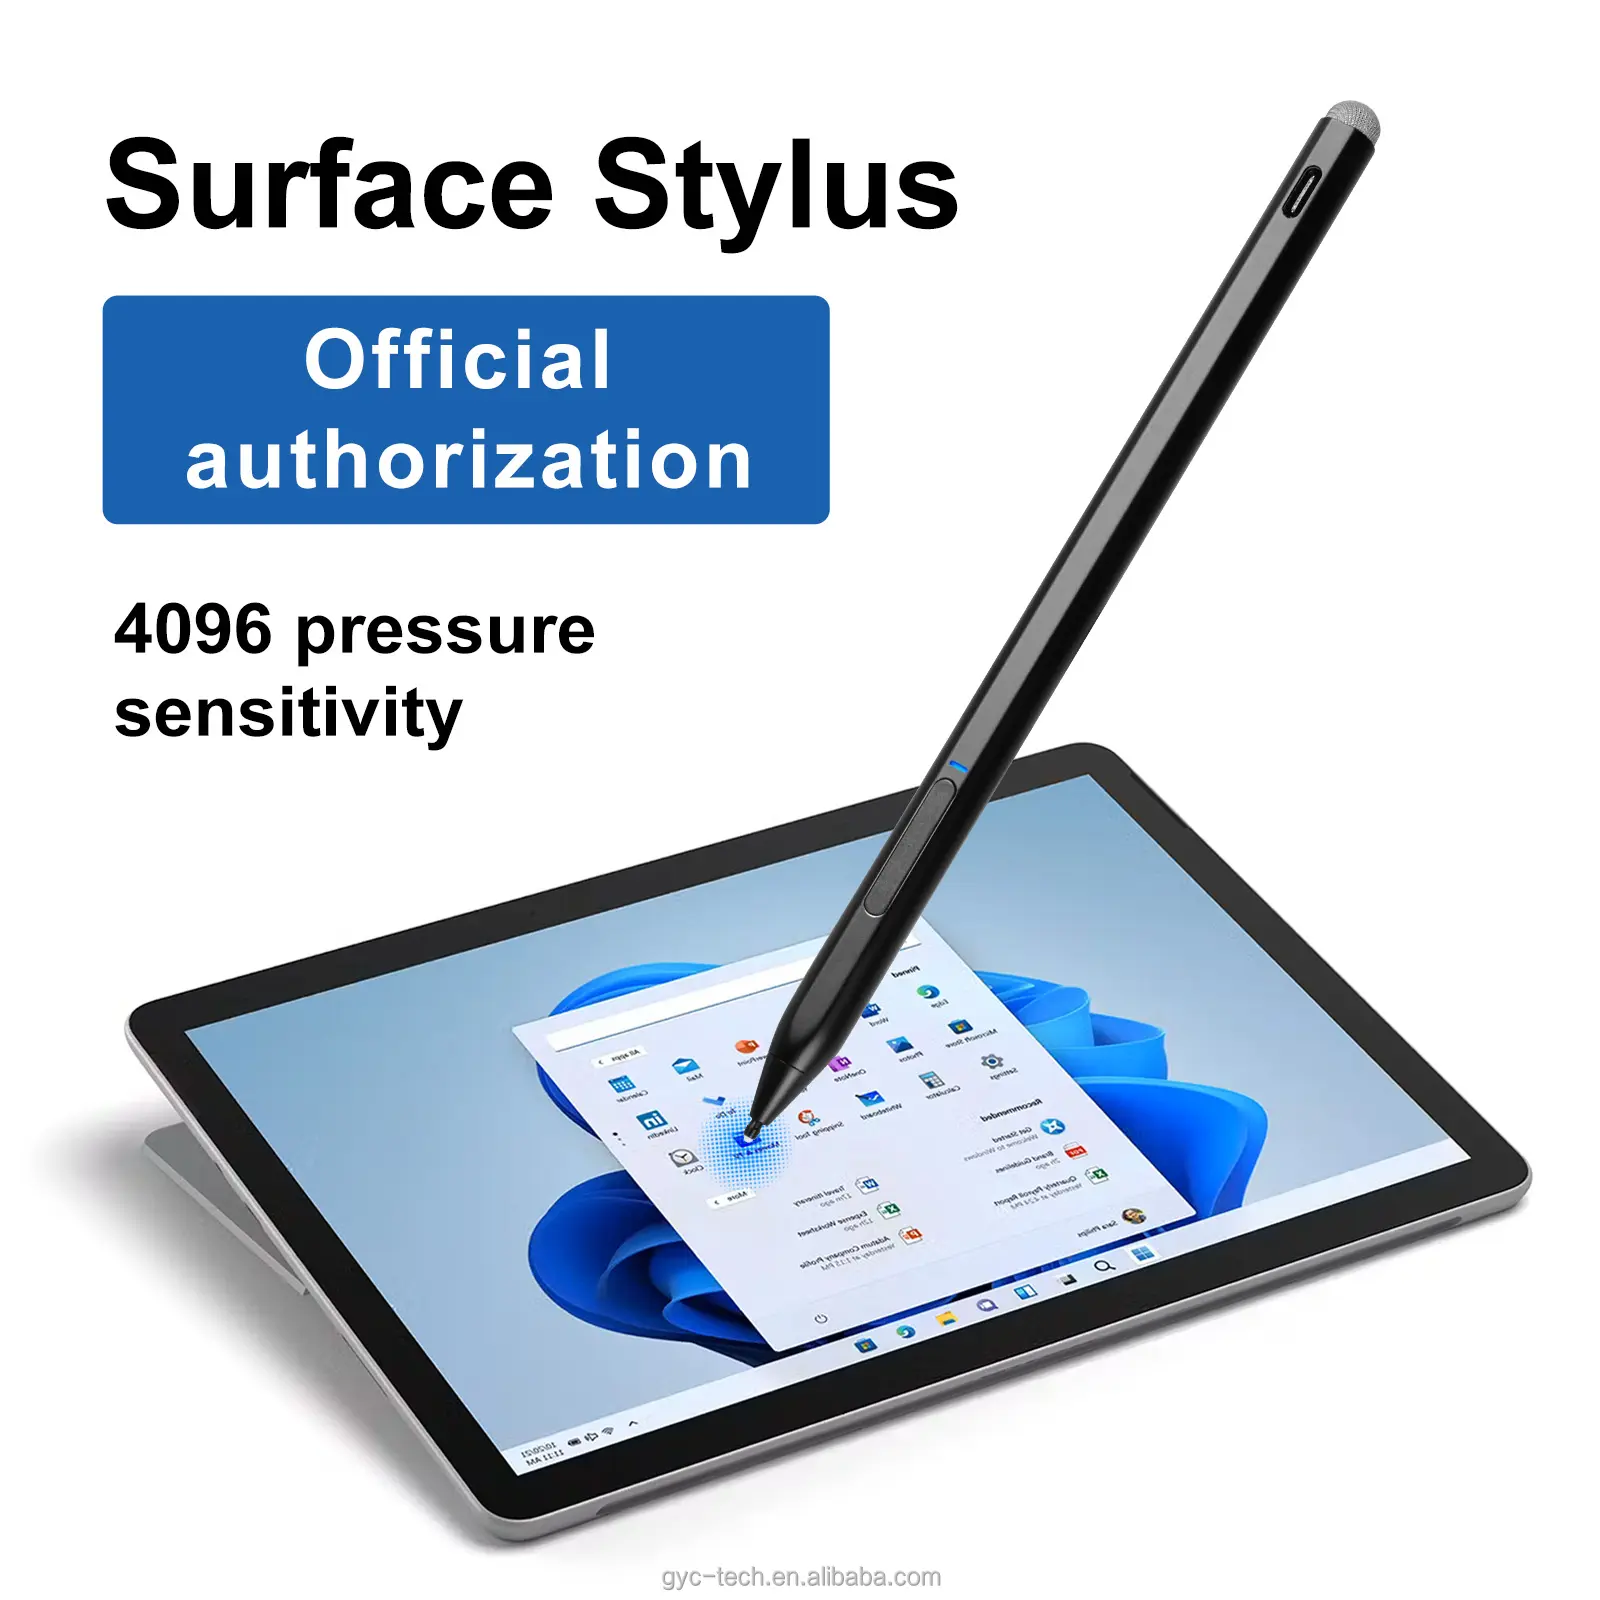 माइक्रोसॉफ्ट सरफेस प्रो 4096 के लिए OEM मैग्नेटिक टच स्टाइलस पेंसिल, एचपी लैपटॉप एक्टिव पेन सरफेस के लिए दबाव संवेदनशीलता